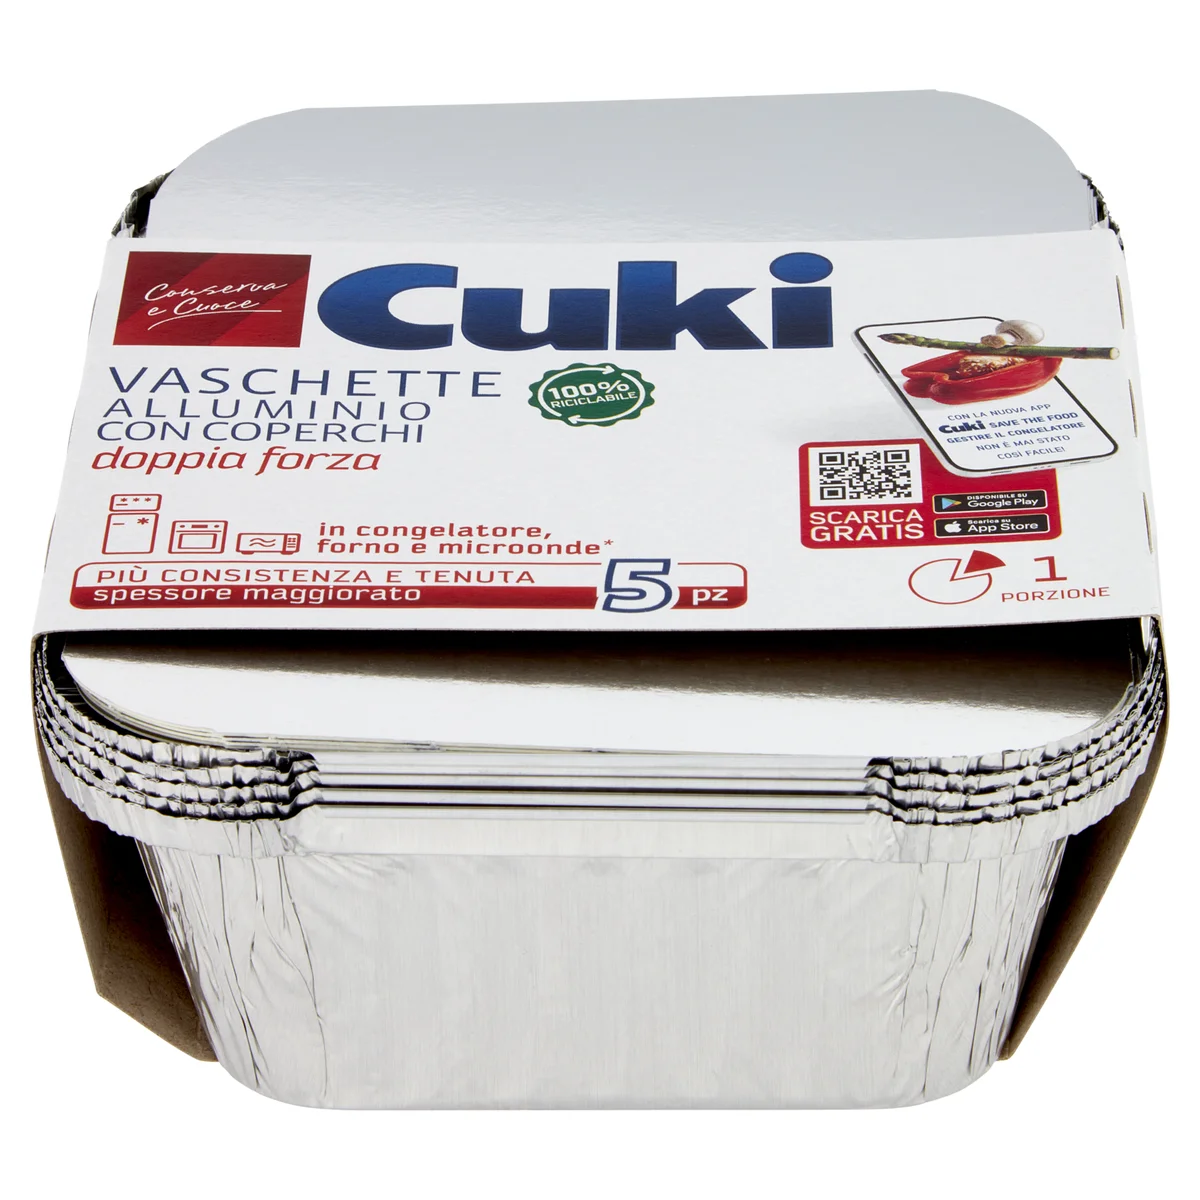 Cuki Conserva e Cuoce Vaschette alluminio con coperchi 1 porzione - 5 pz  (R31)